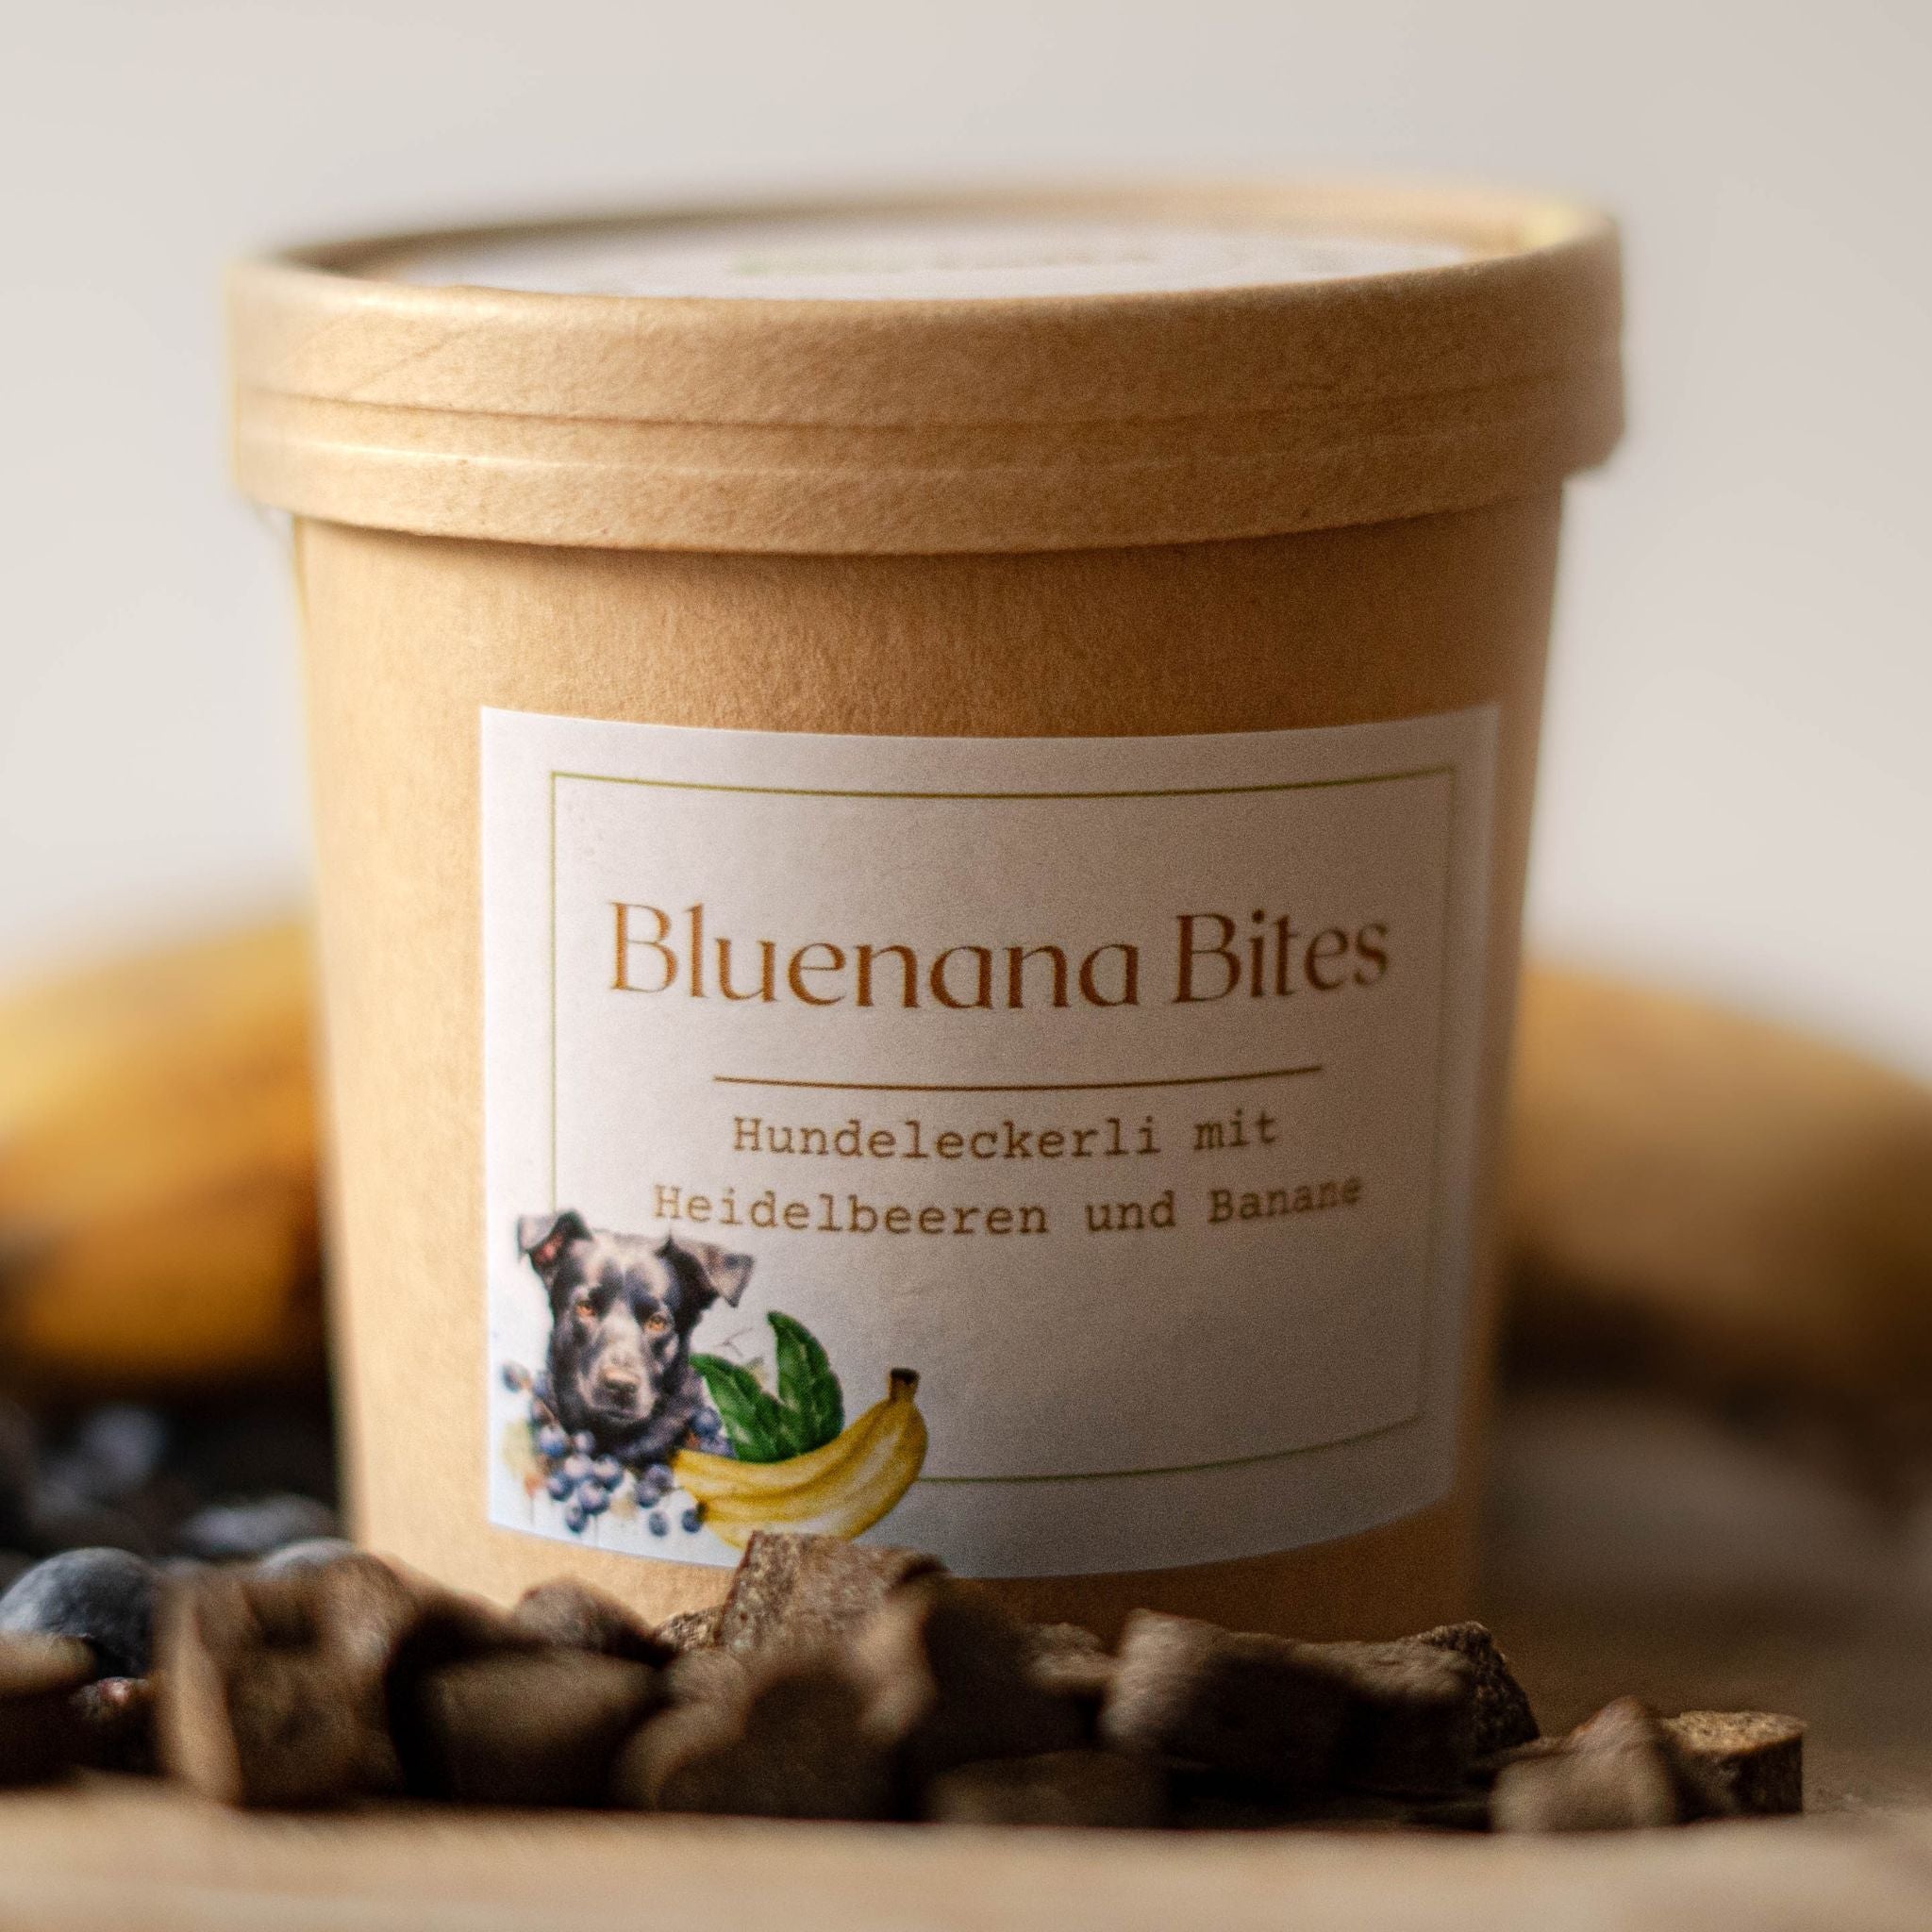 Fairtails Bluenana Bites - Vegane Hundeleckerli Heidelbeere Banane (100g)